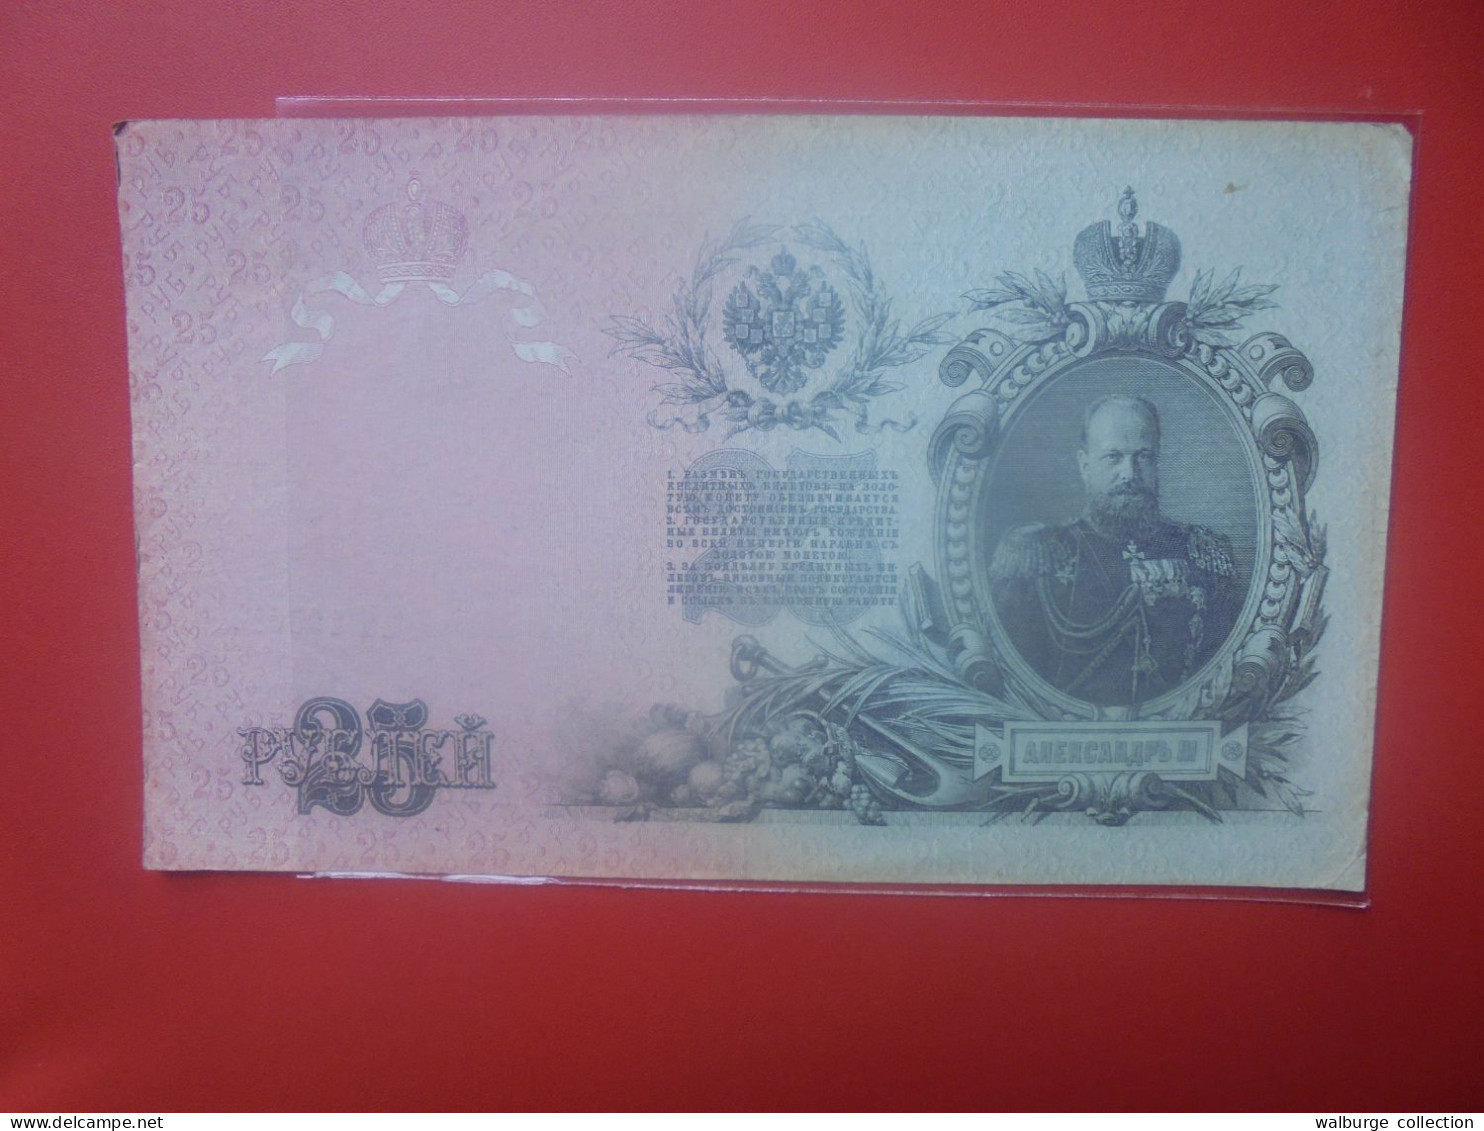 RUSSIE 25 Roubles 1909 Circuler (B.33) - Russie